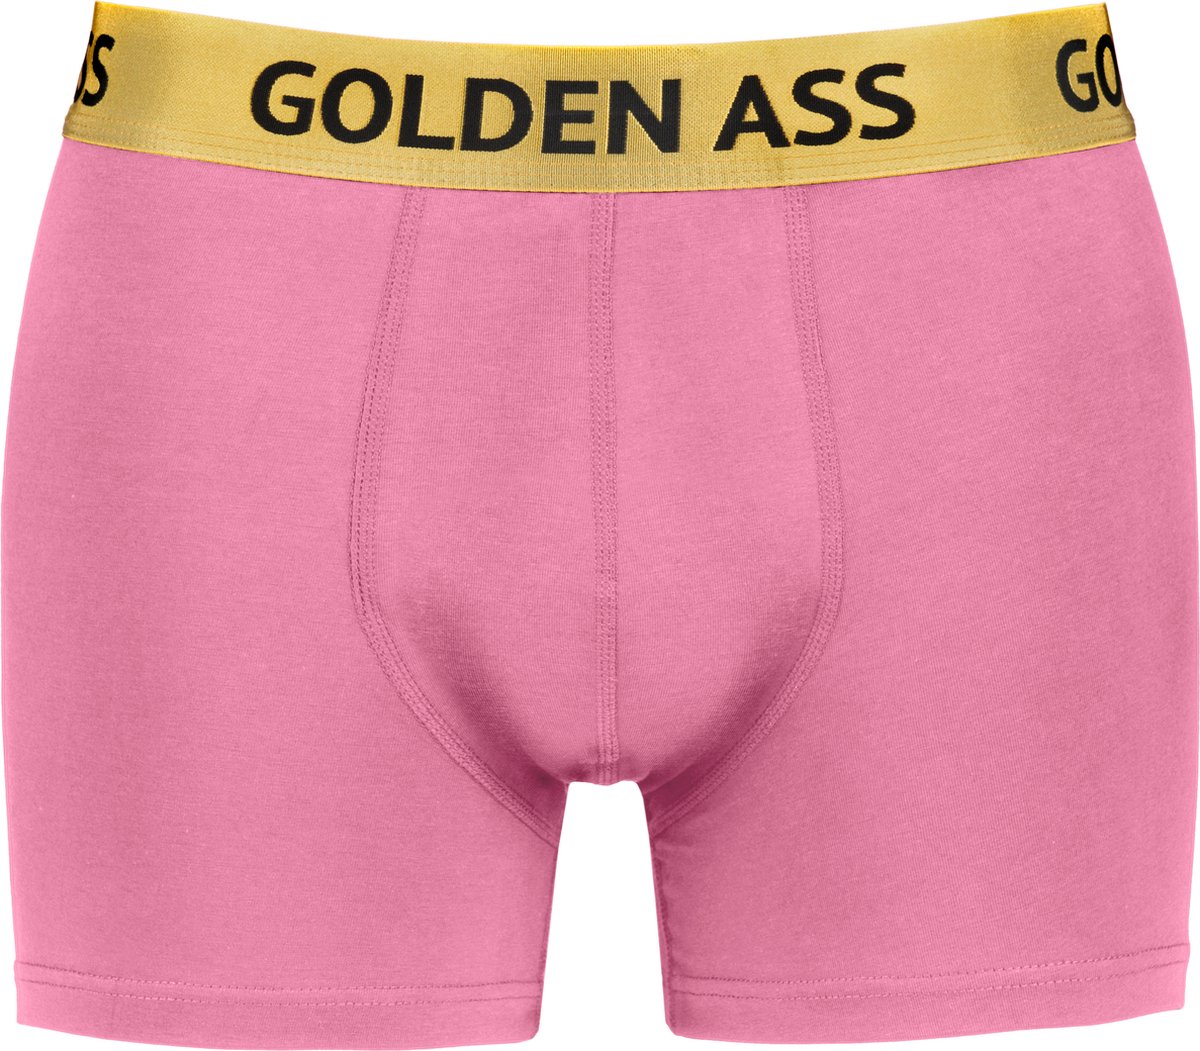 Golden Ass - Heren boxershort roze L